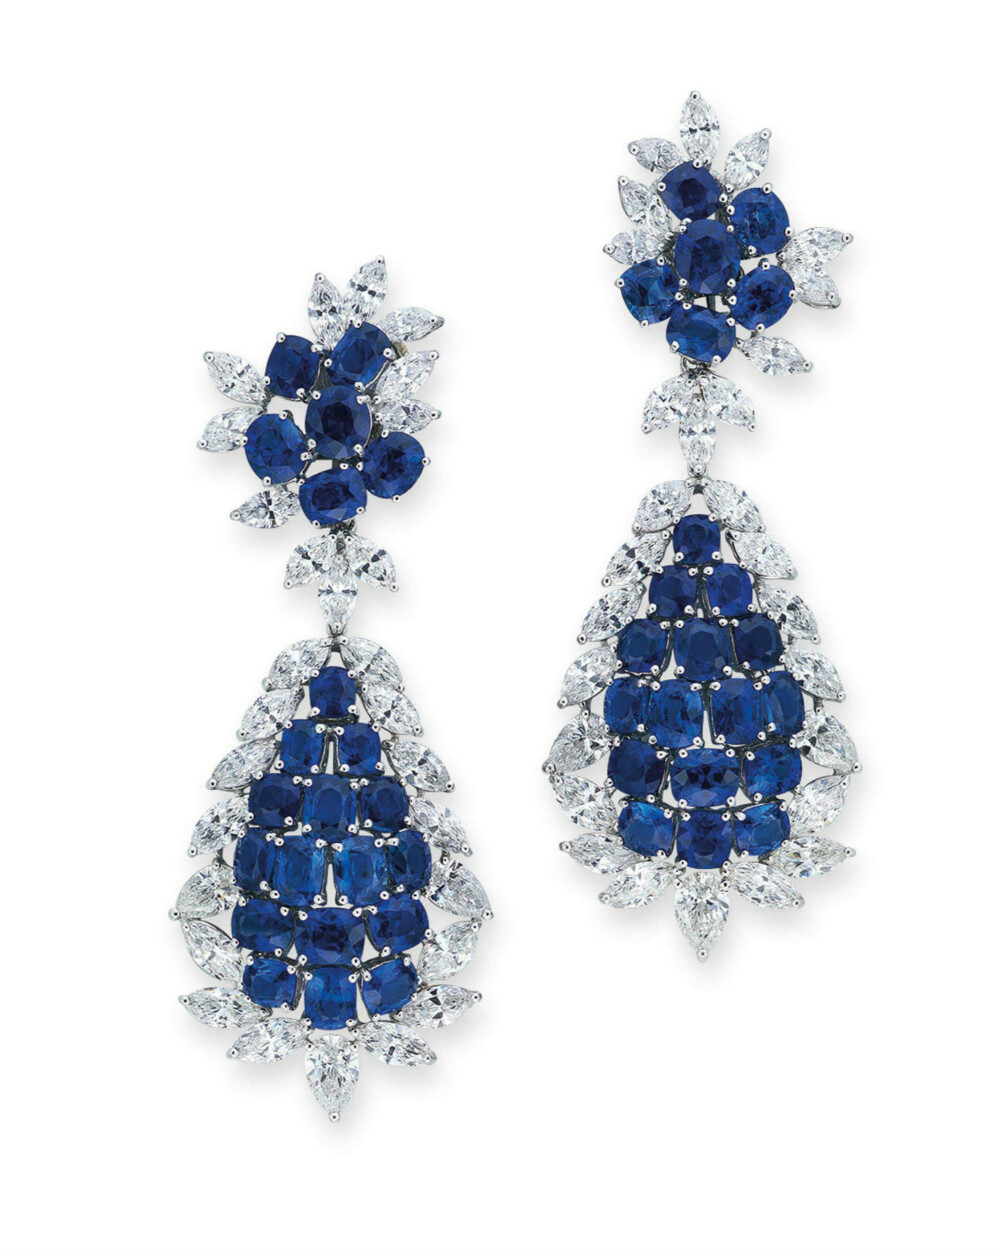 海瑞温斯顿 (Harry Winston)设计蓝宝石及钻石耳环，香港佳士得（Christie's）2019春季拍卖会瑰丽珠宝及翡翠首饰专场